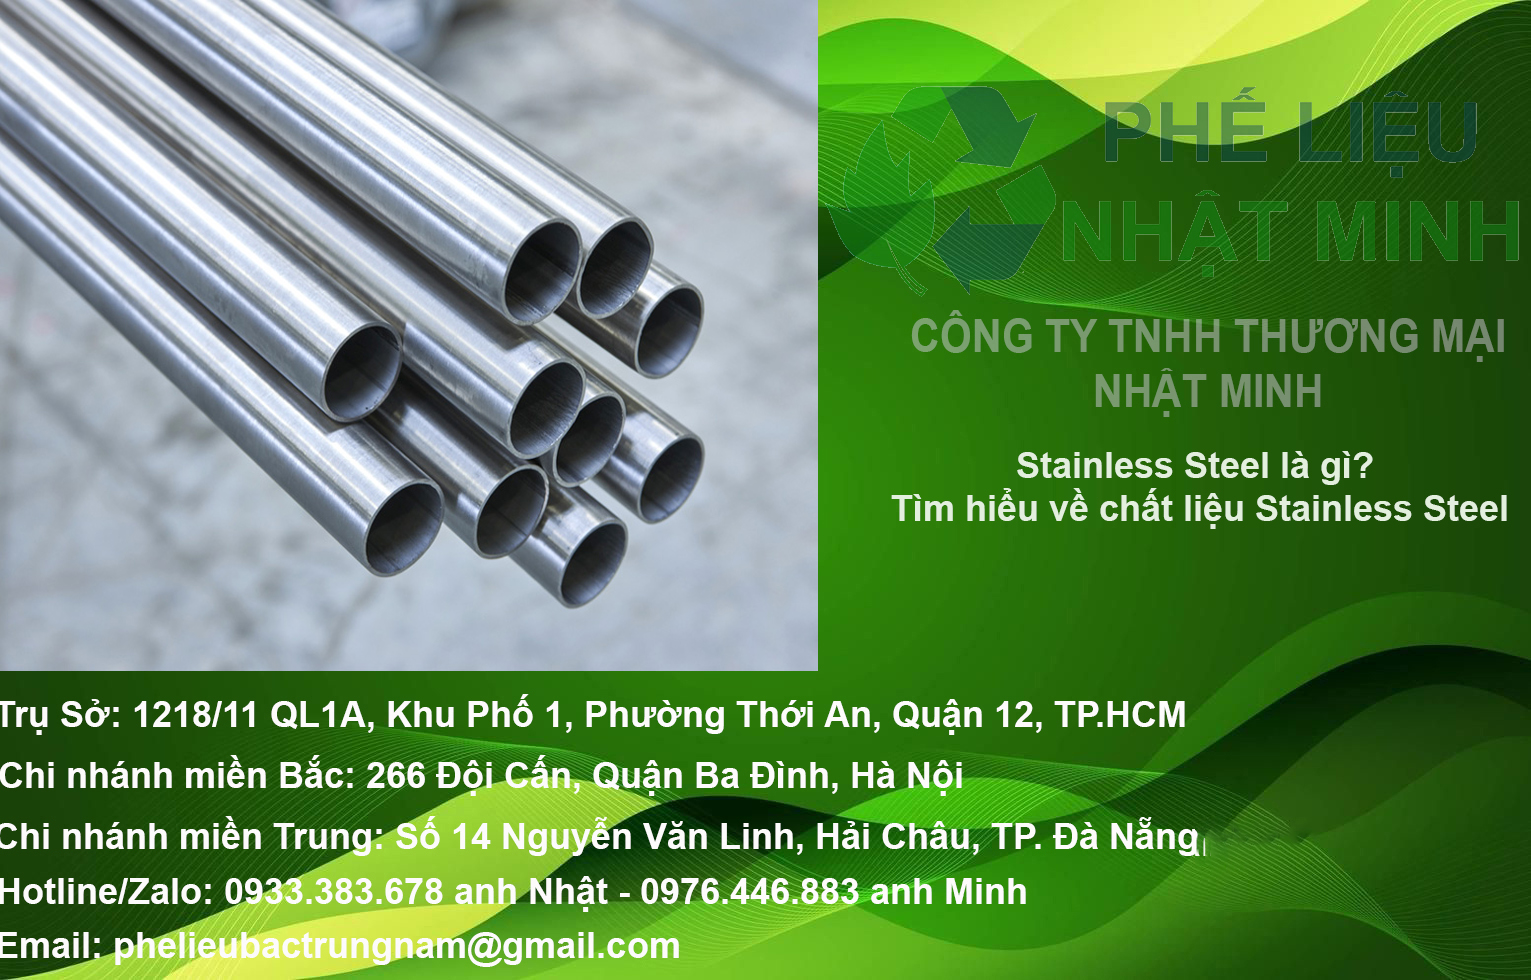 Stainless Steel là gì? Tìm hiểu về chất liệu Stainless Steel